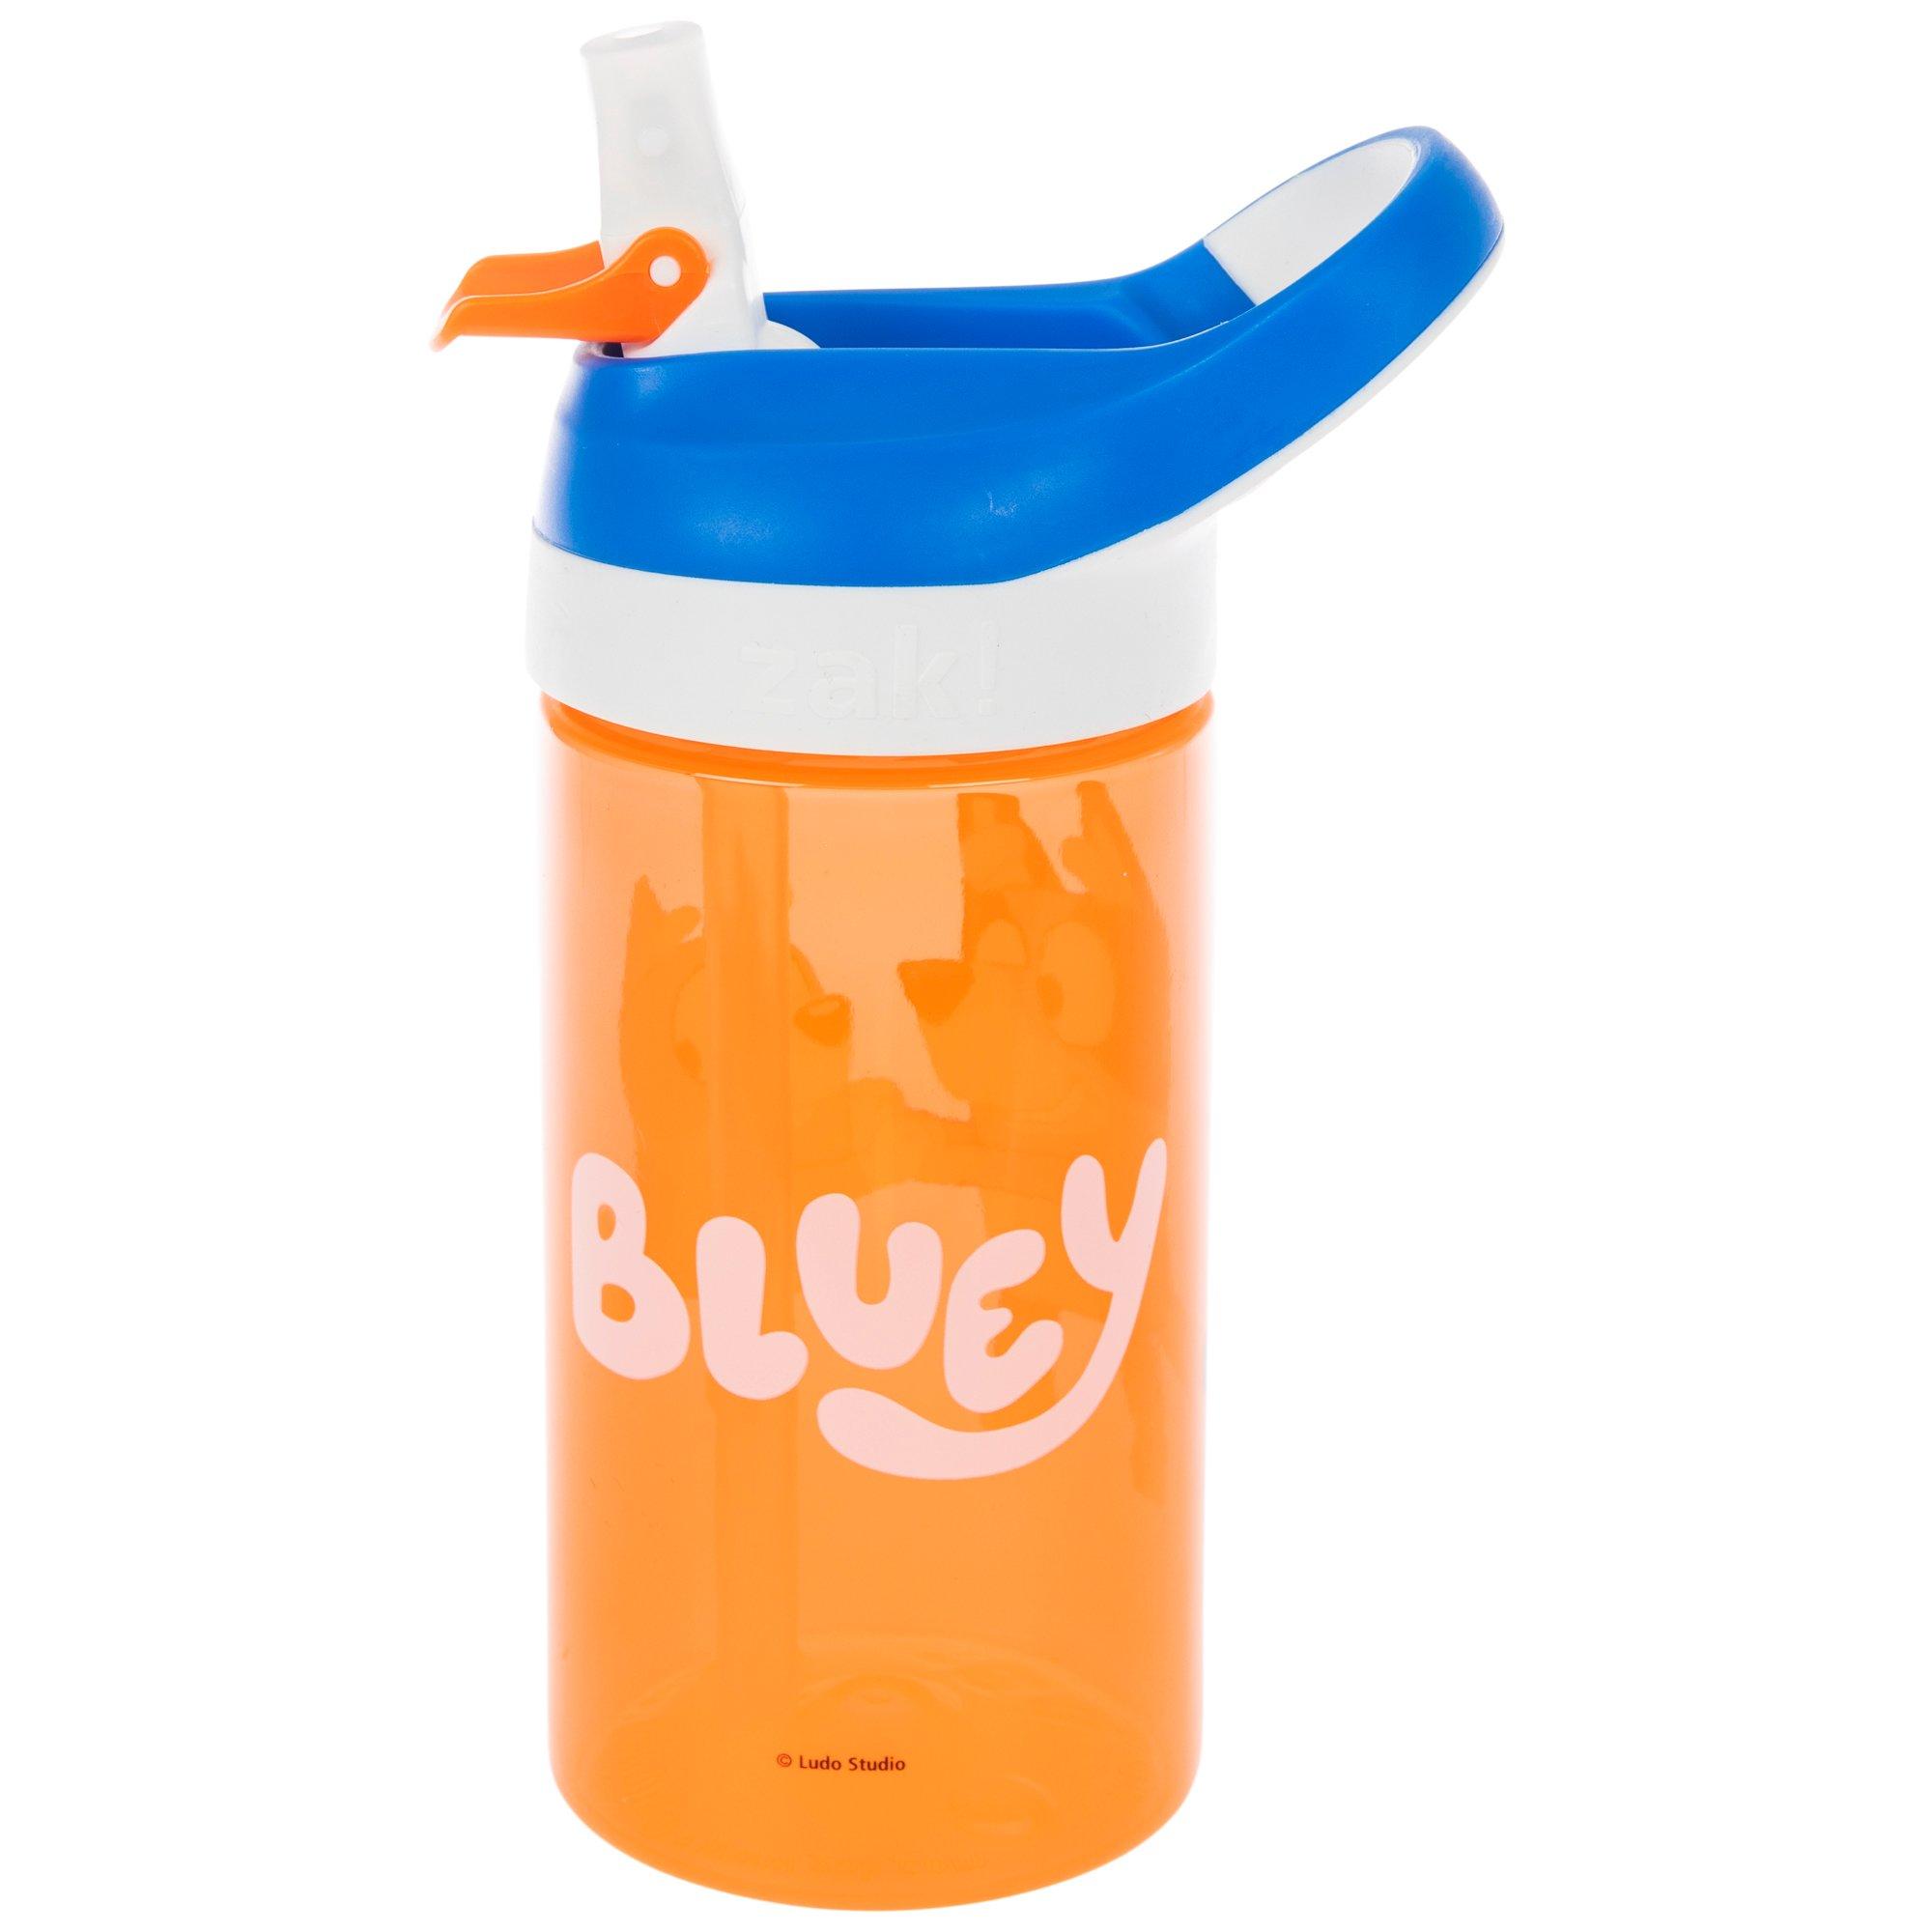 Bluey Water Bottle Kit, Hobby Lobby